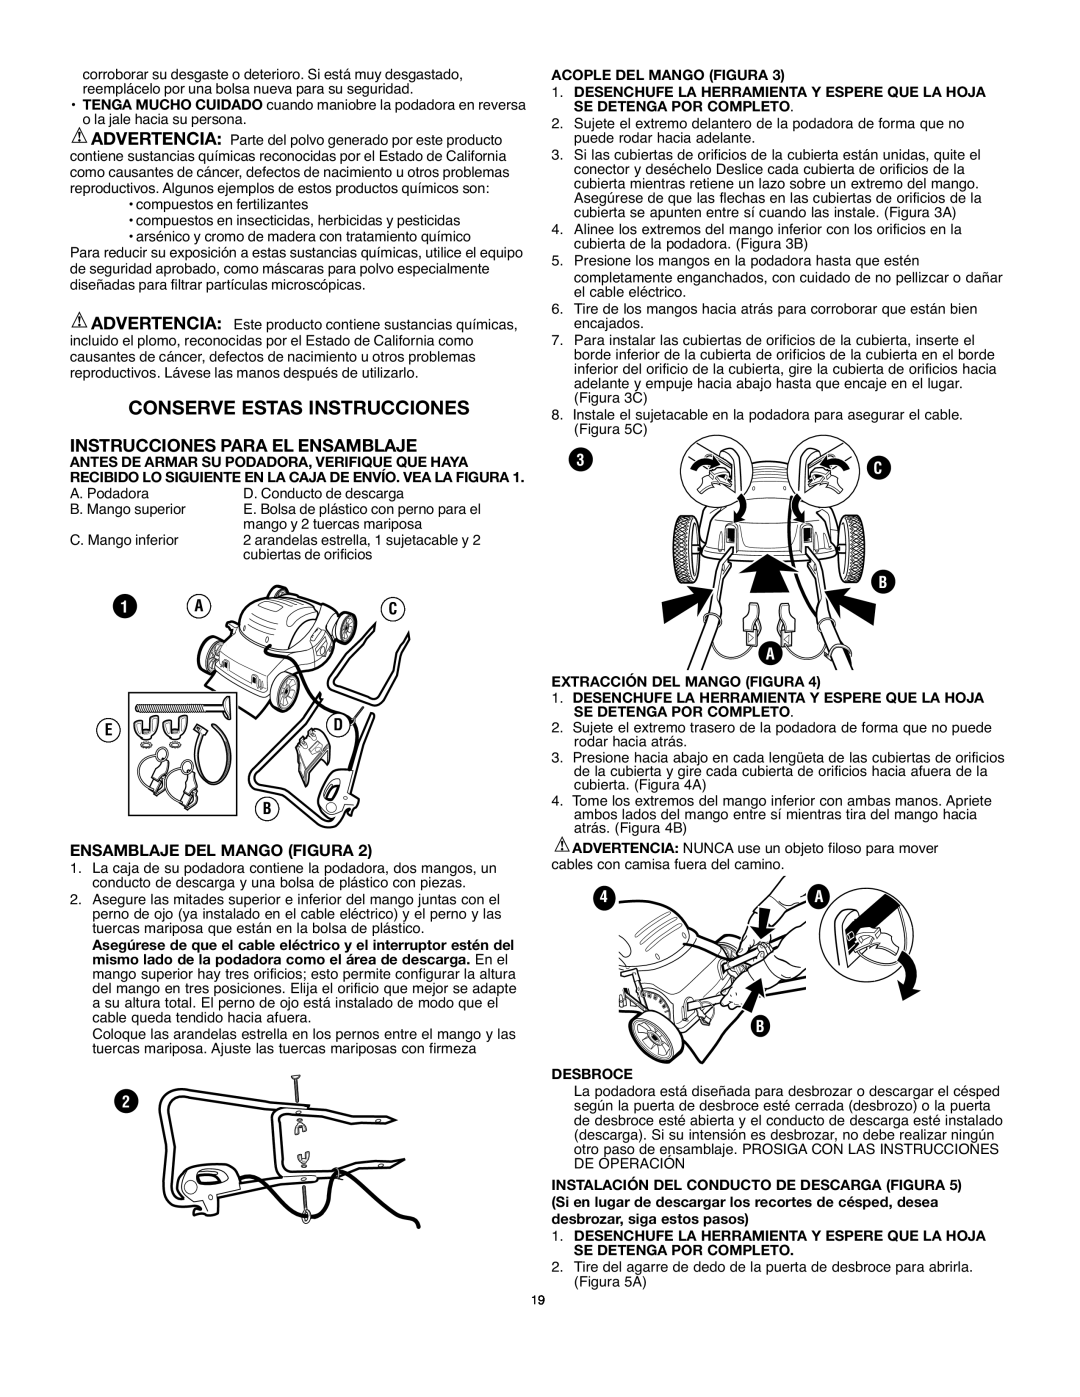 Black & Decker MM575 Conserve Estas Instrucciones, Instrucciones Para El Ensamblaje, Ensamblaje Del Mango Figura 